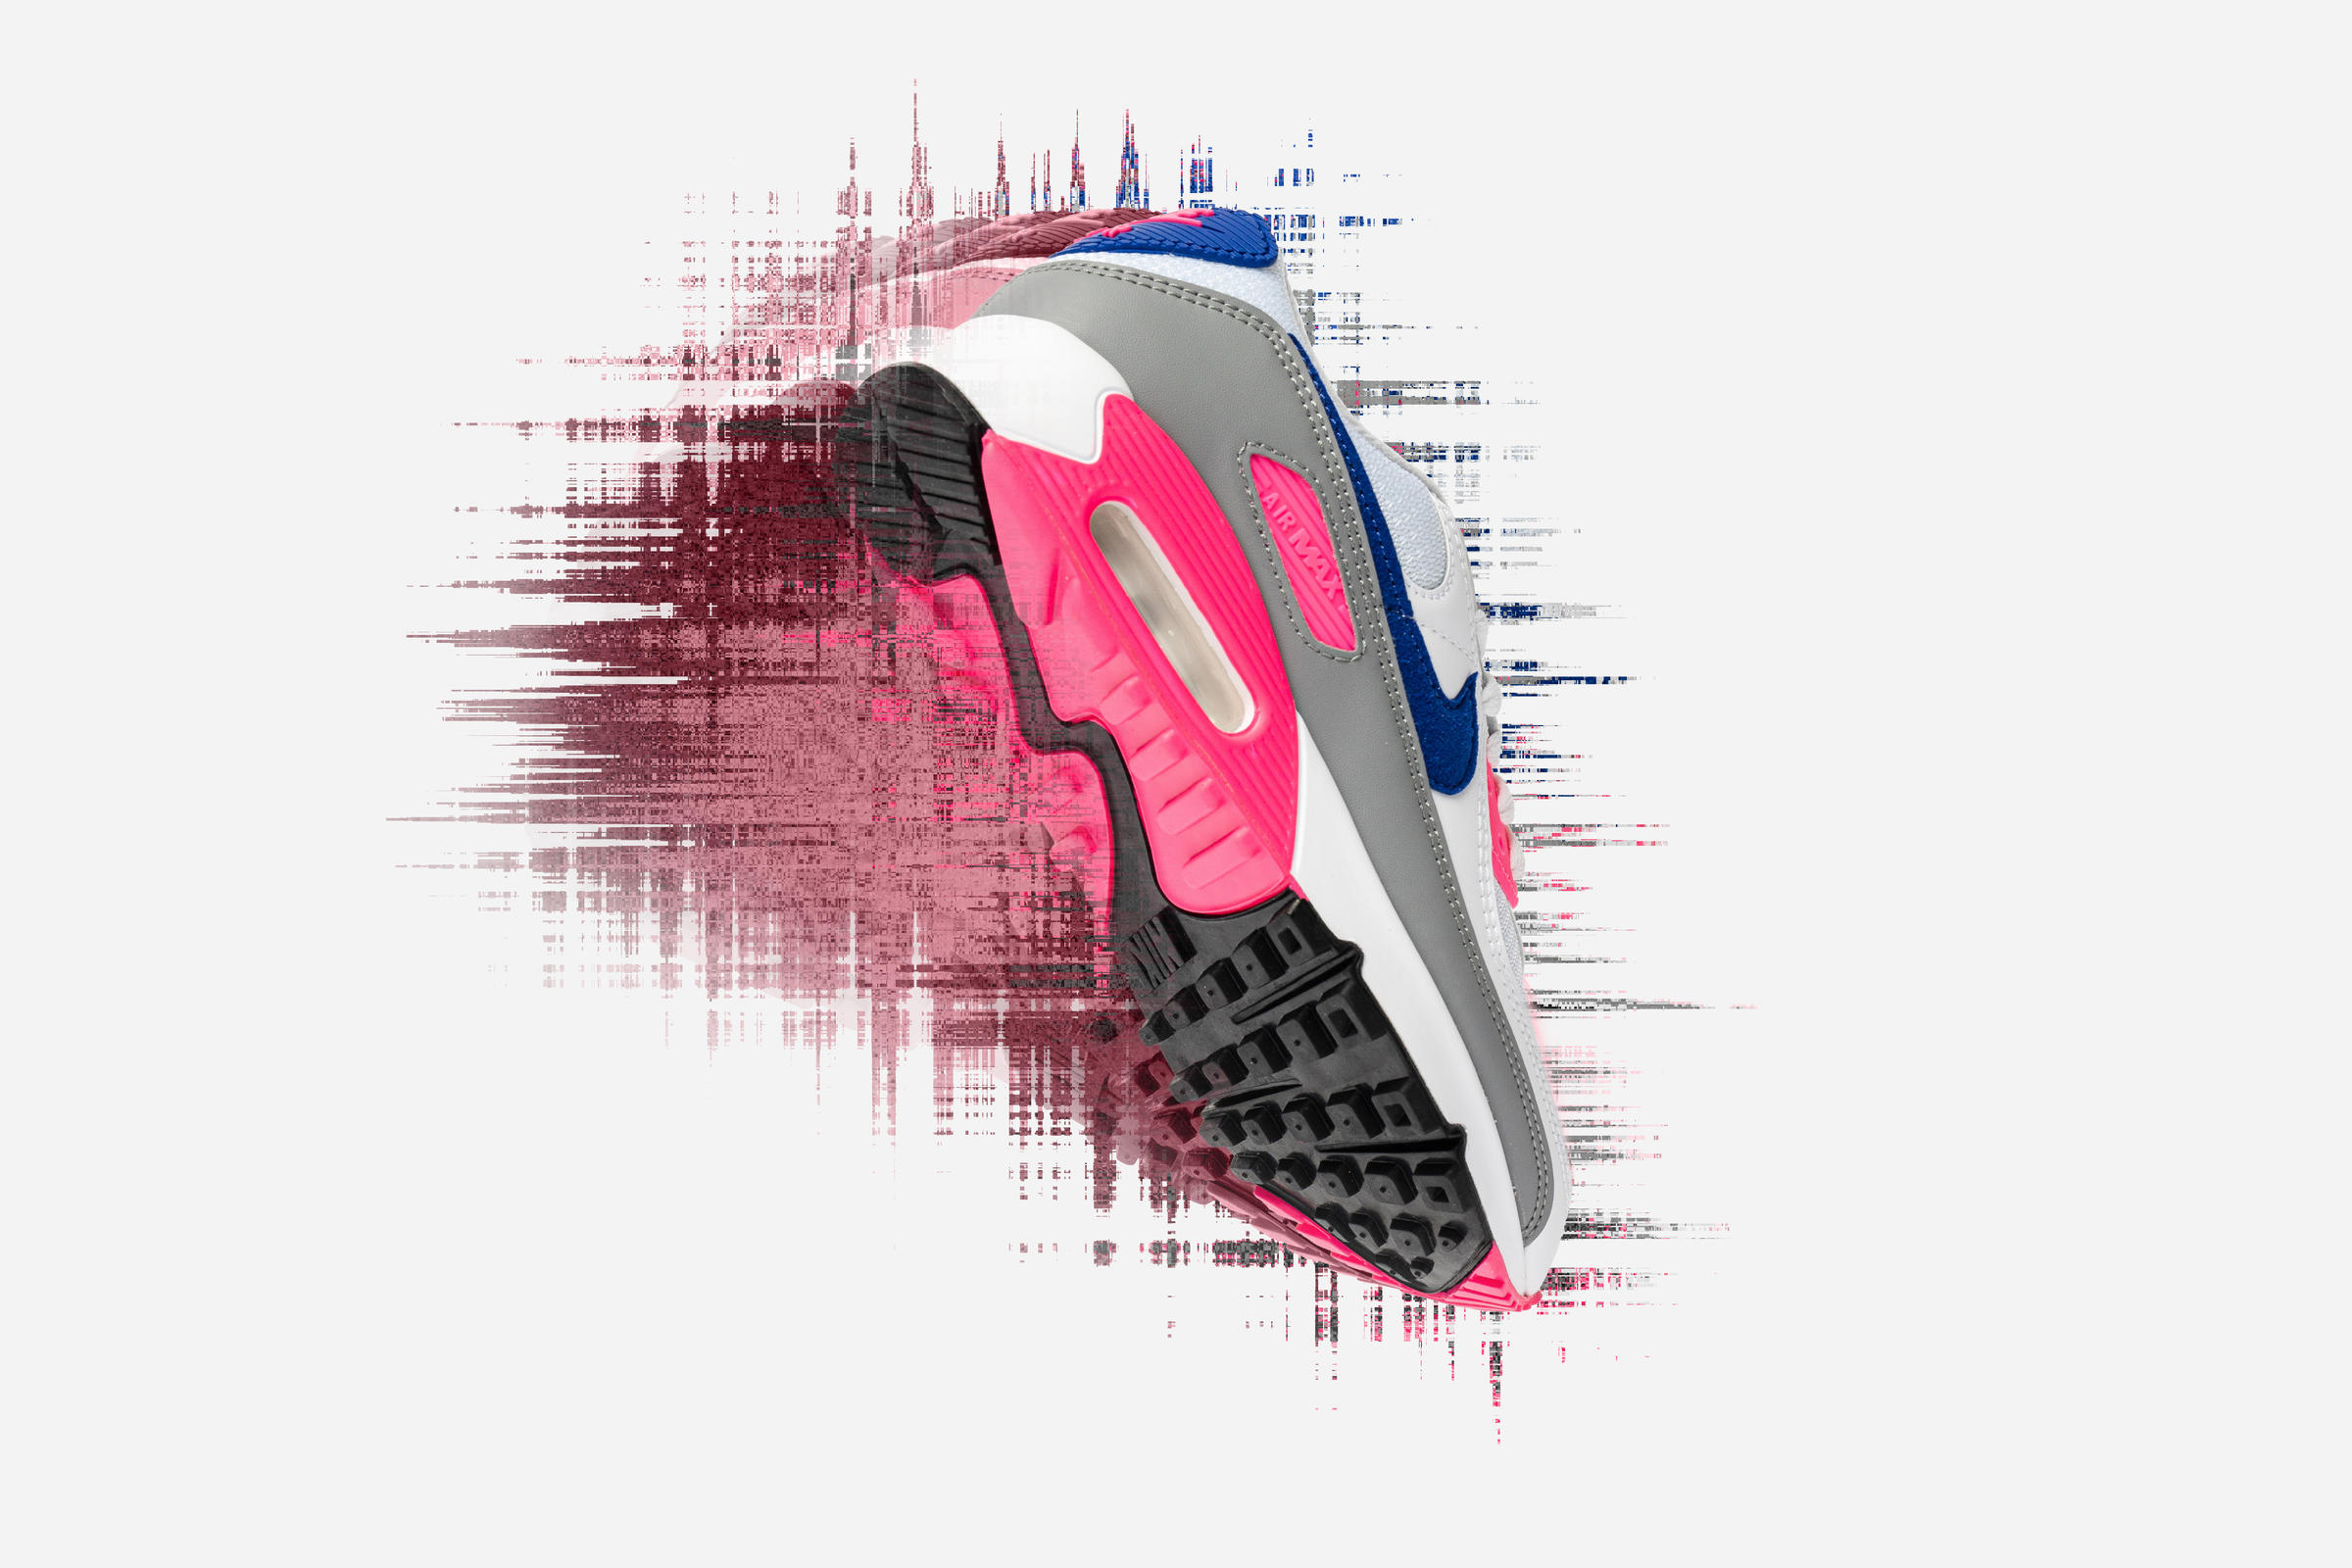 Nike WMNS AIR MAX III "PINK BLAST"